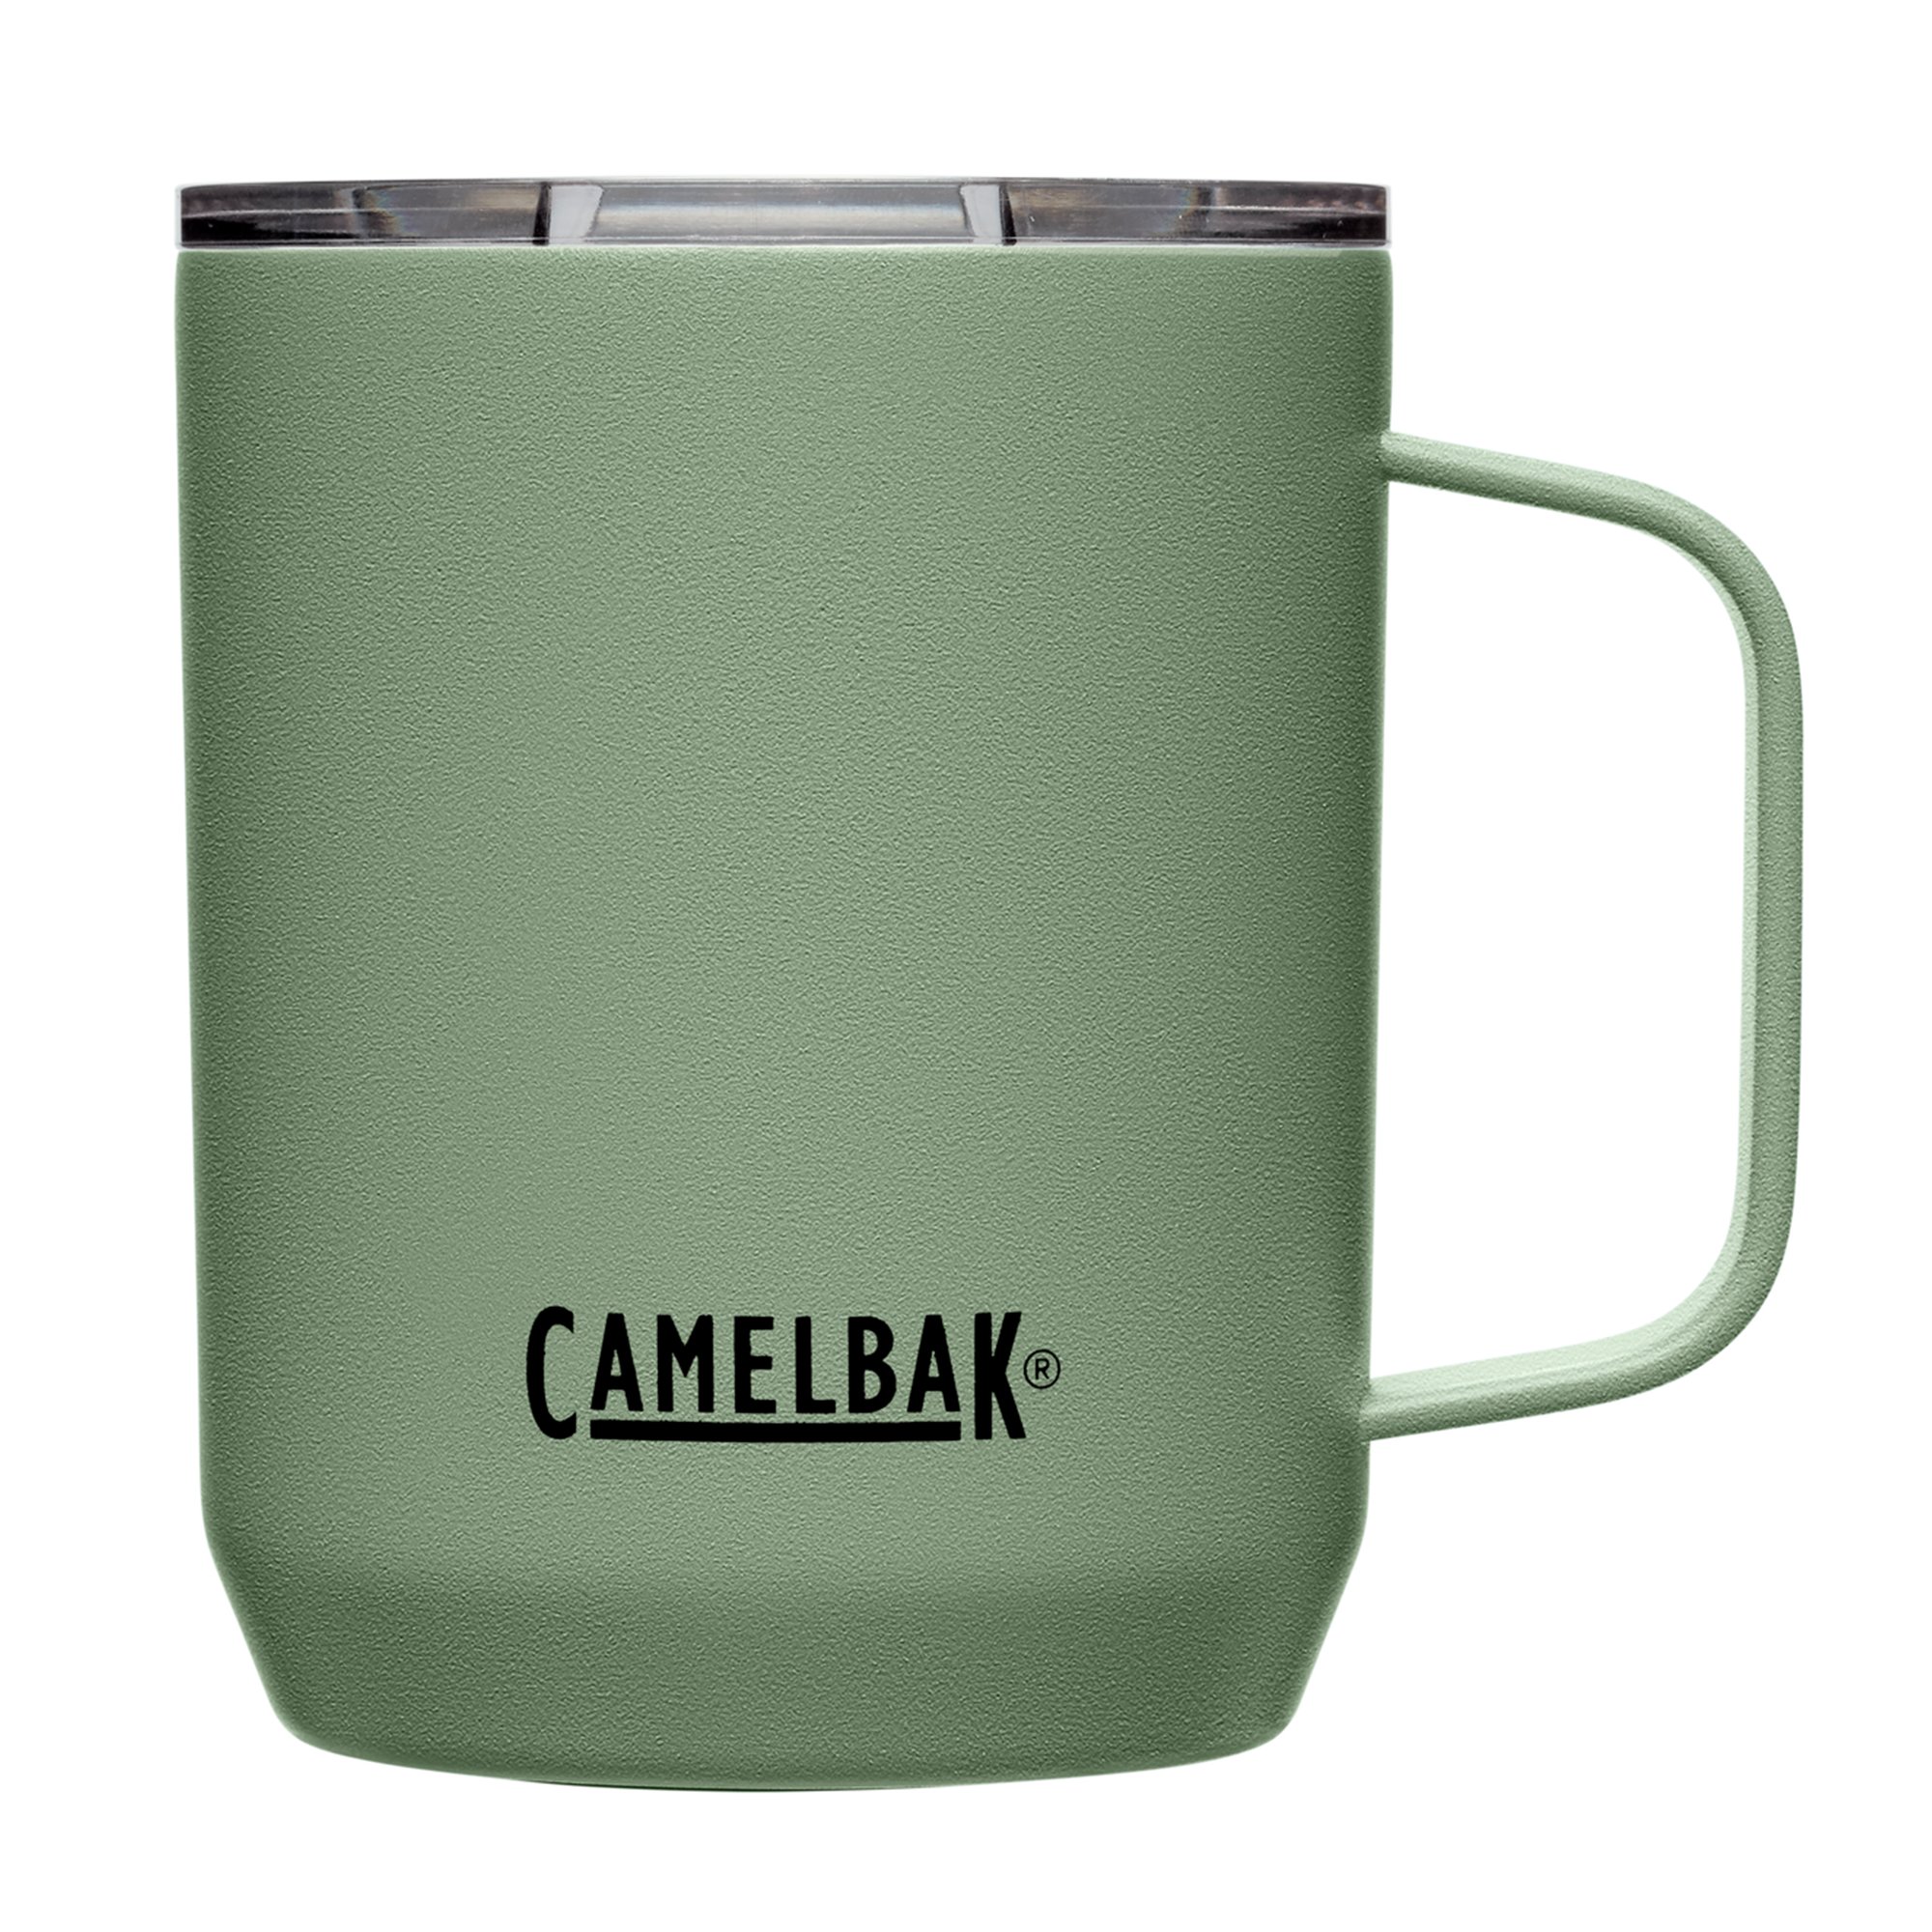 Camelbak Termokrus 0.35 liter, moss